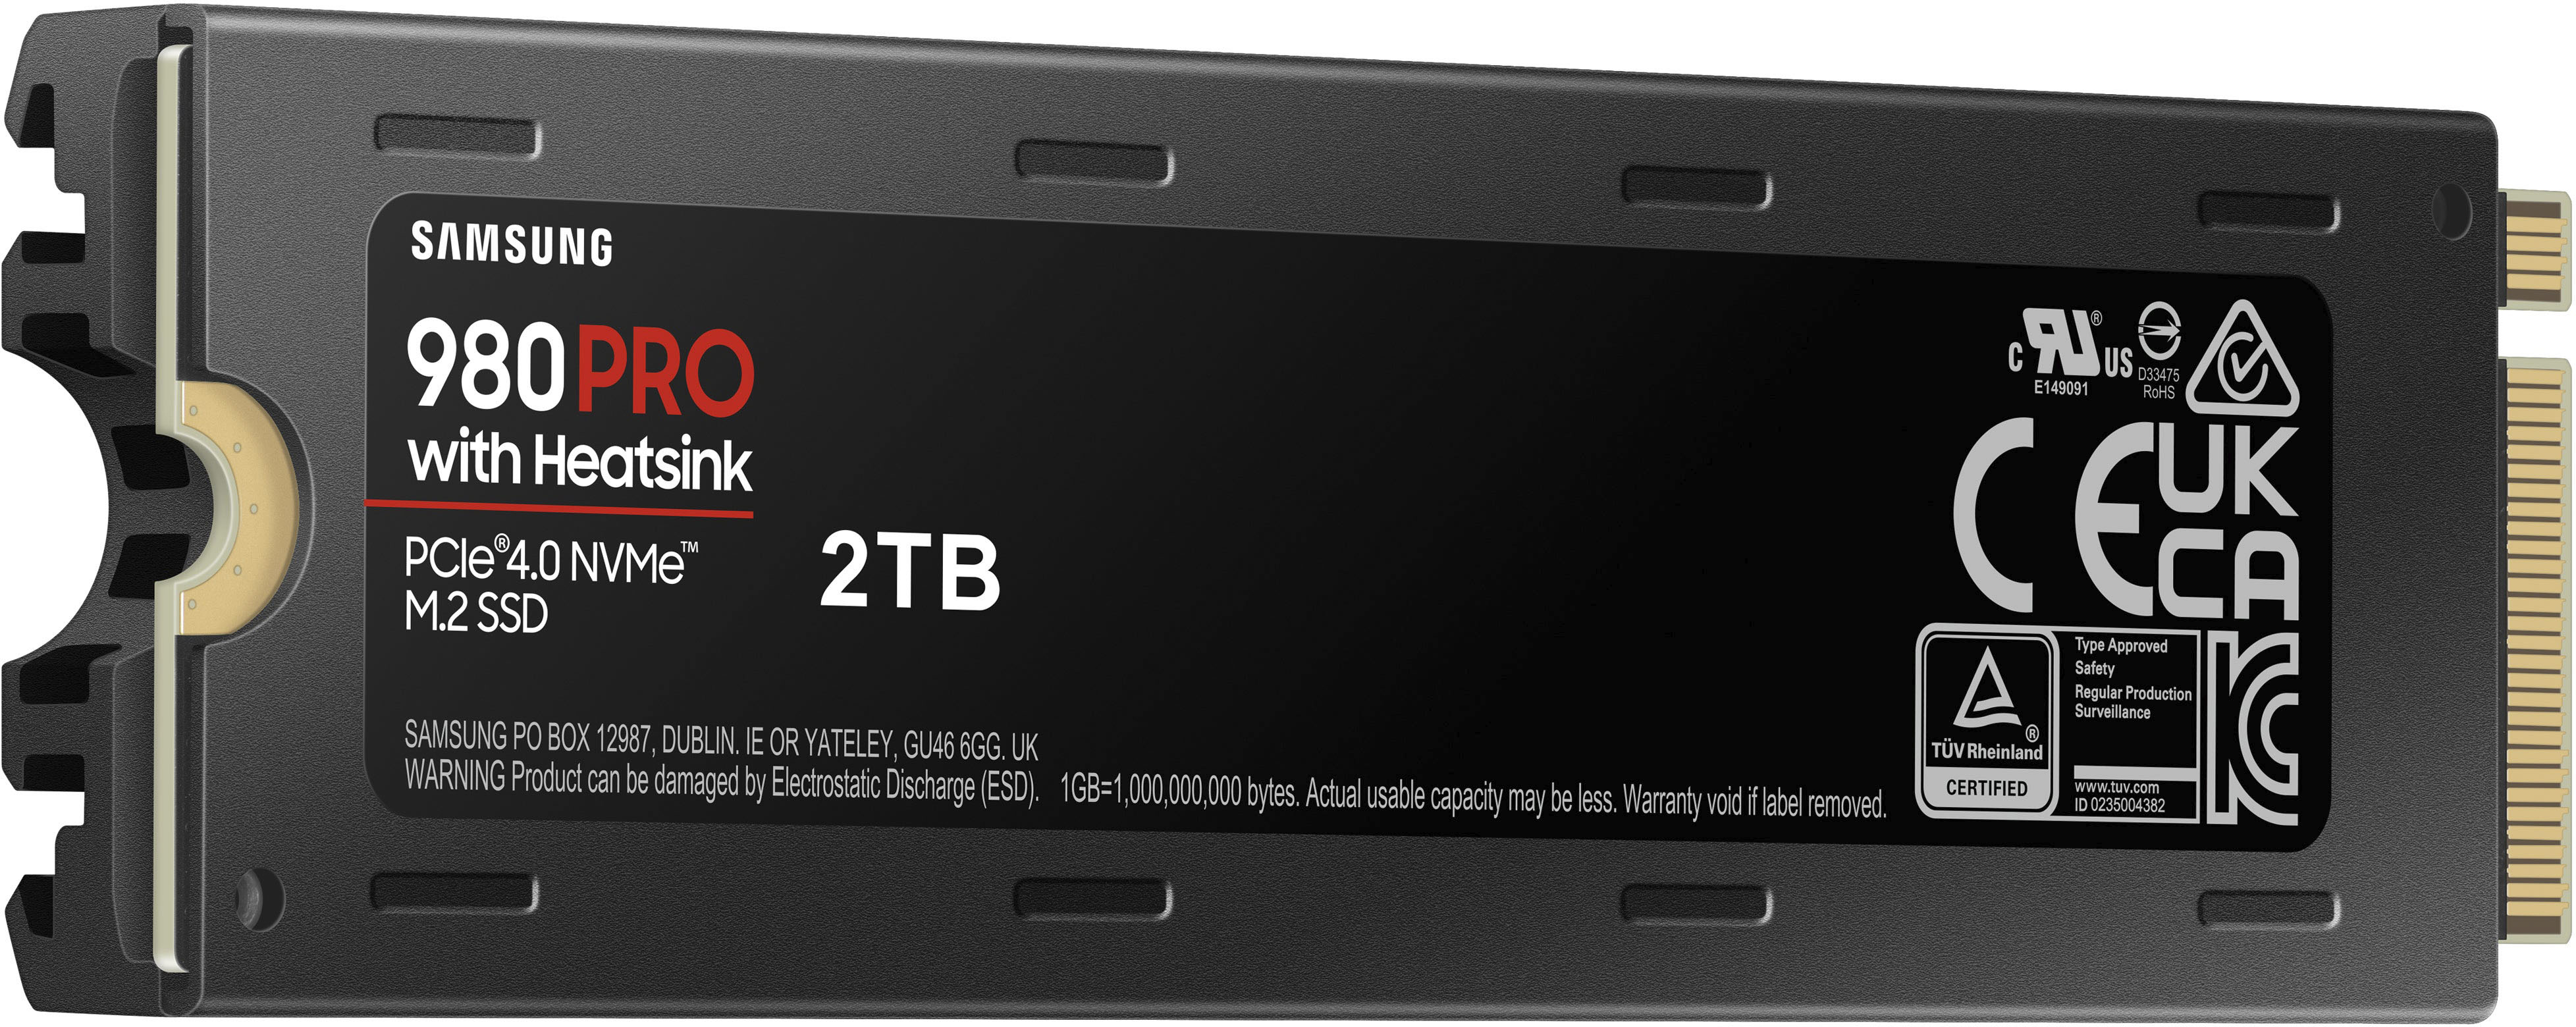 Samsung 980 PRO Heatsink 2TB Internal SSD PCIe Gen 4 x4 NVMe for PS5  MZ-V8P2T0CW - Best Buy